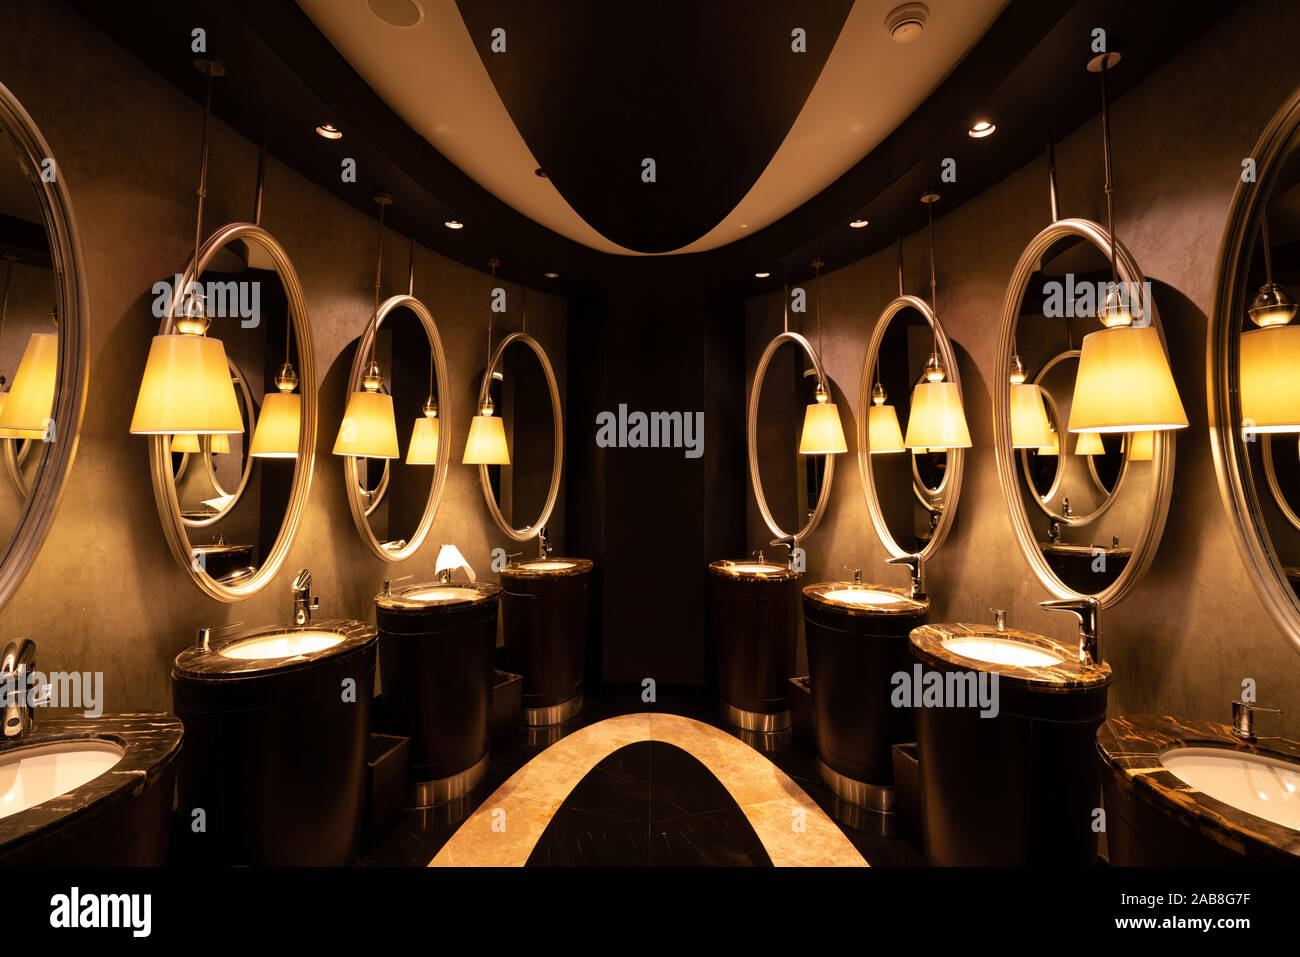 Eine modern eingerichtete, öffentliche Toilette mit Spiegel in ein luxuriöses Restaurant oder Hotel. Stockfoto